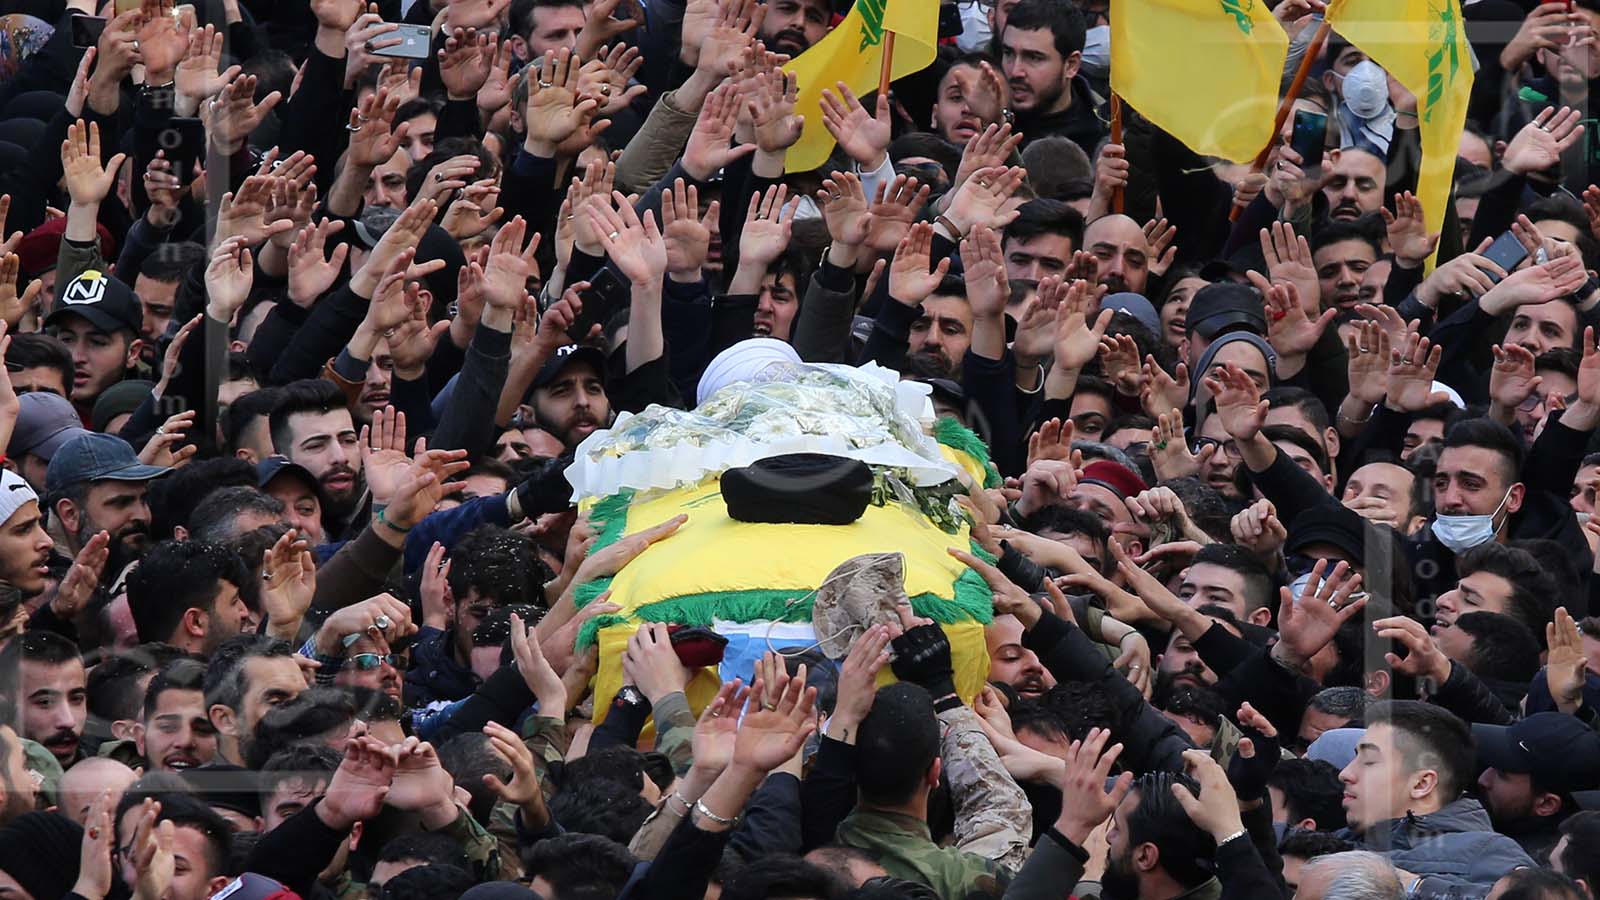 حزب الله لن يستسلم للعقوبات والجوع.. ويتحضر للردّ